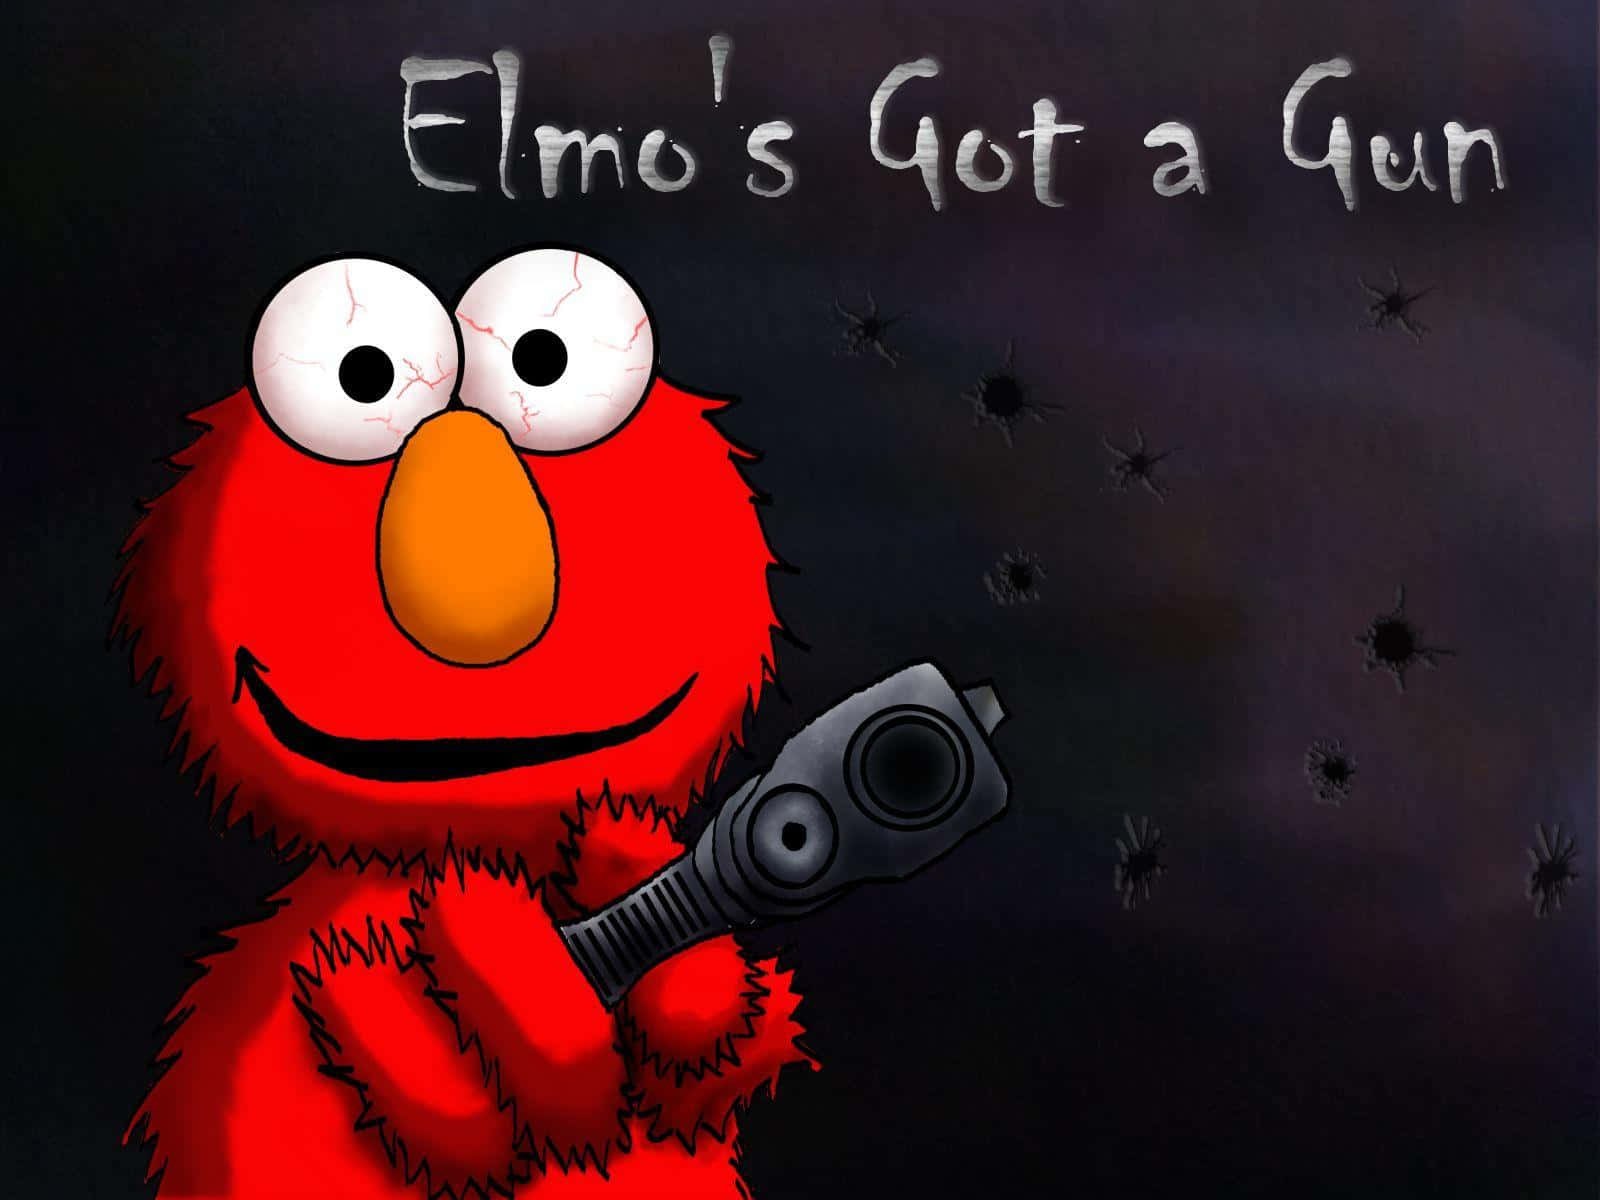 Witzigesbild Von Elmo Aus Der Sesamstraße, Wie Er Eine Waffe Hält.